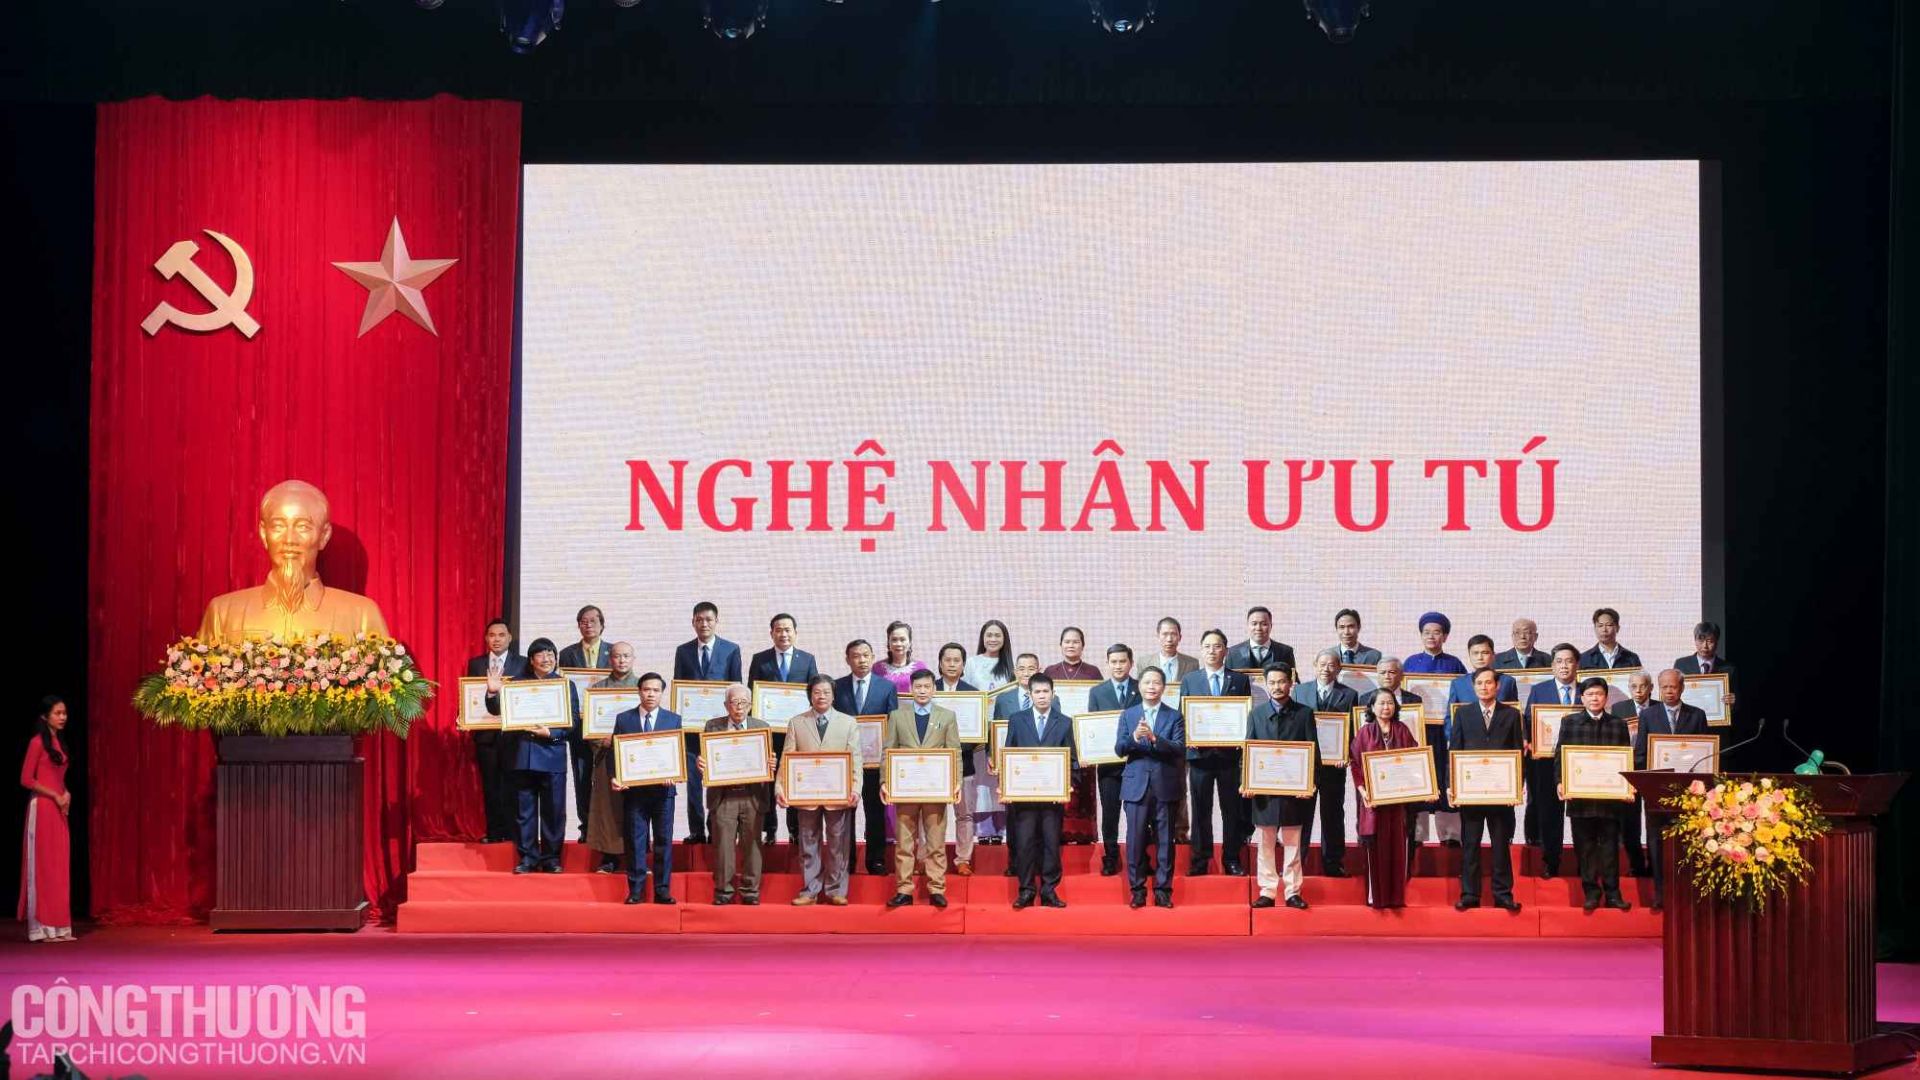 Bộ trưởng Trần Tuấn Anh trao tặng danh hiệu Nghệ nhân Ưu tú cho 72 cá nhân